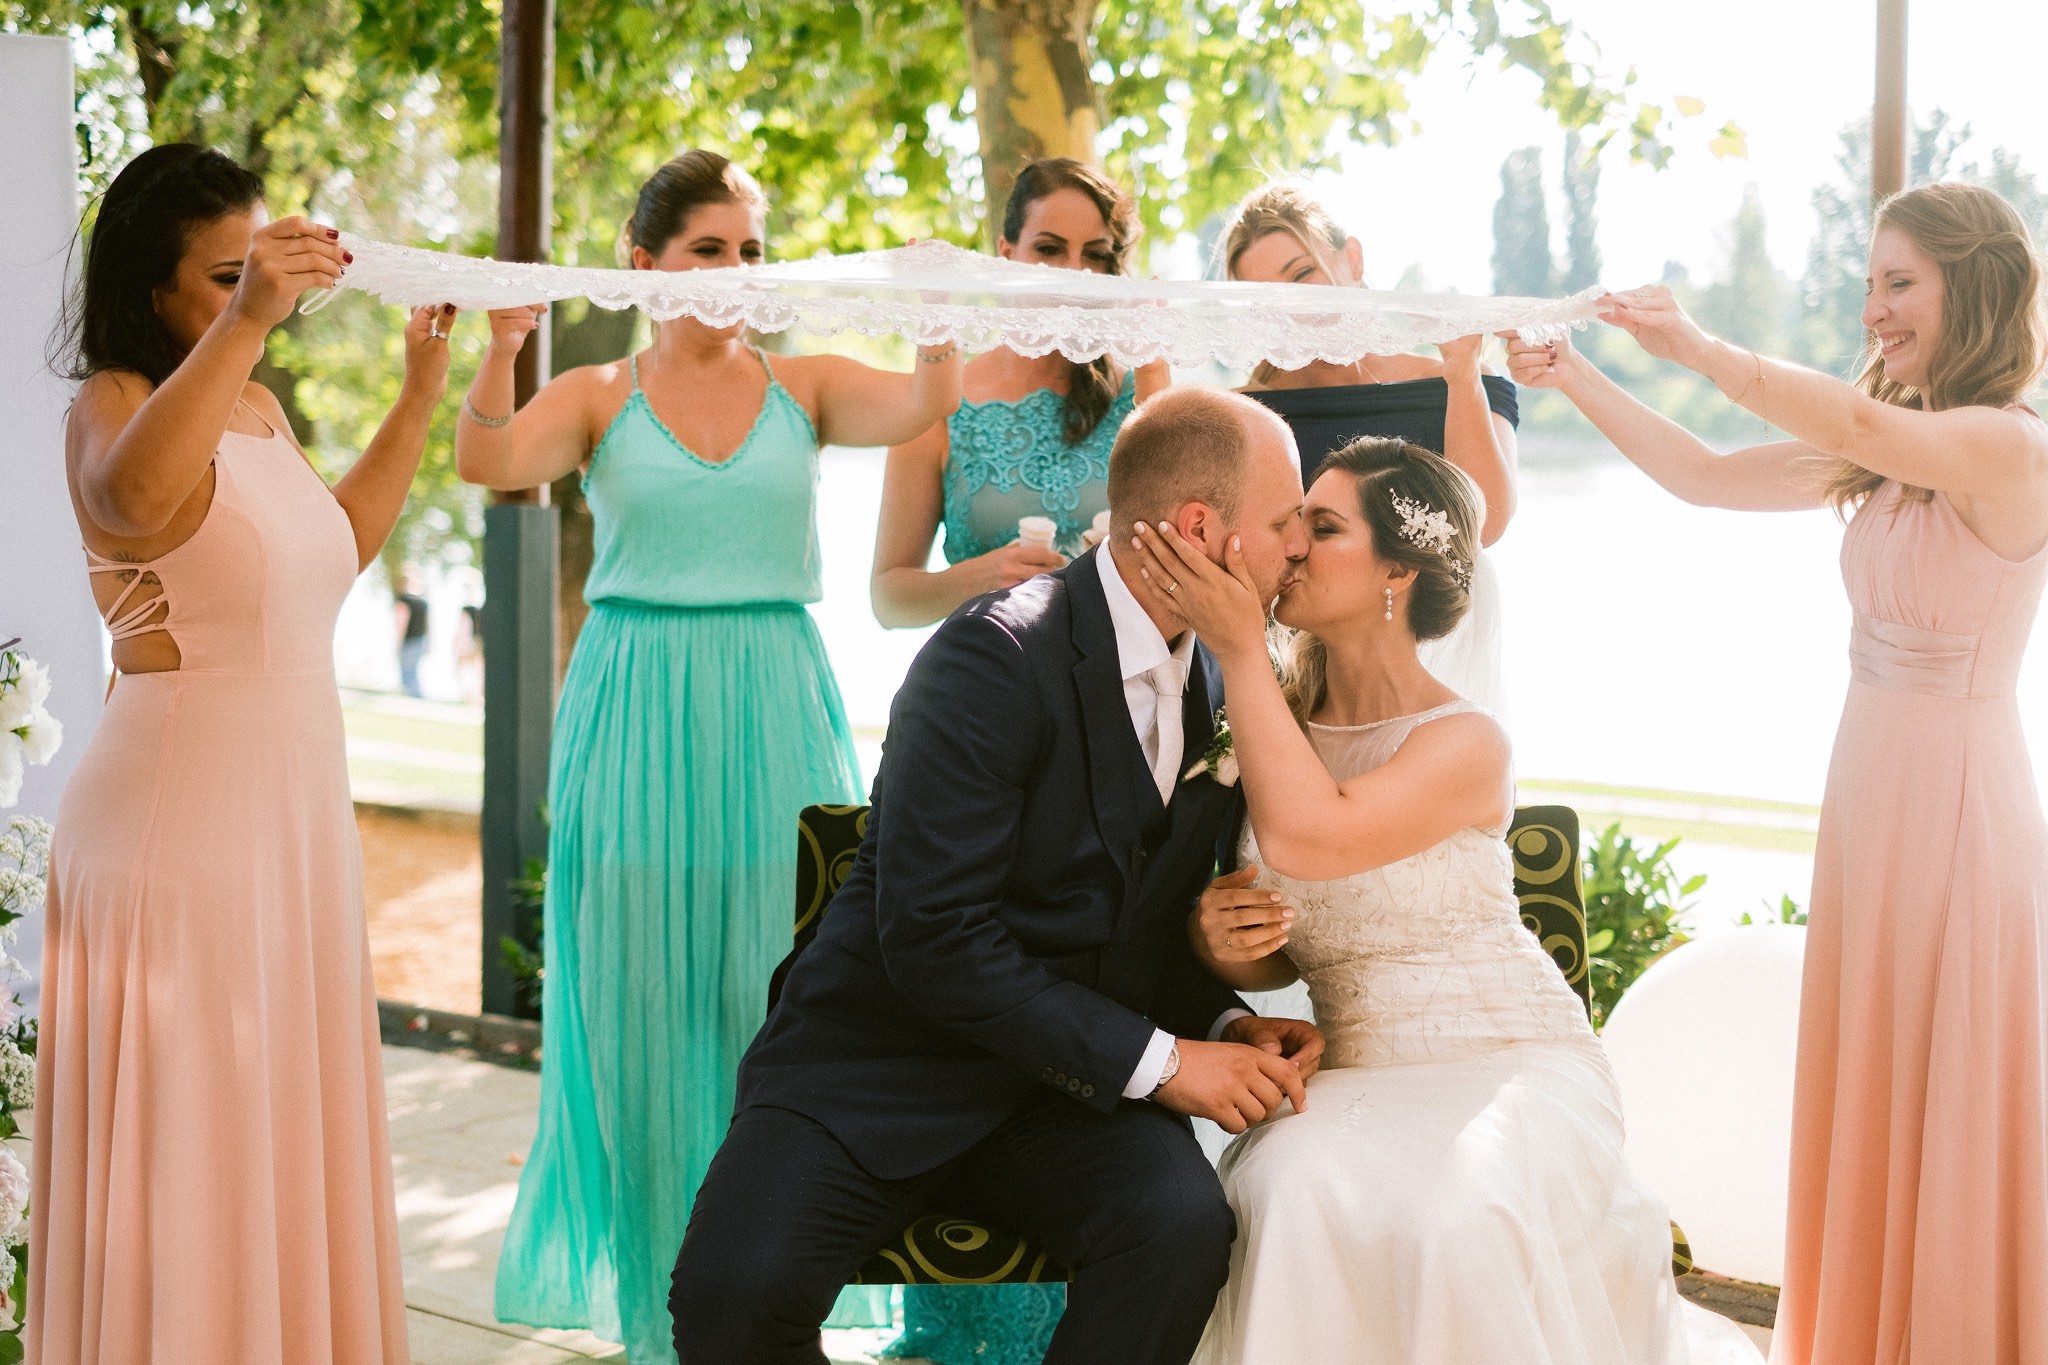 Brazilian Wedding in Hungary - Balazs Lengyel Photographer